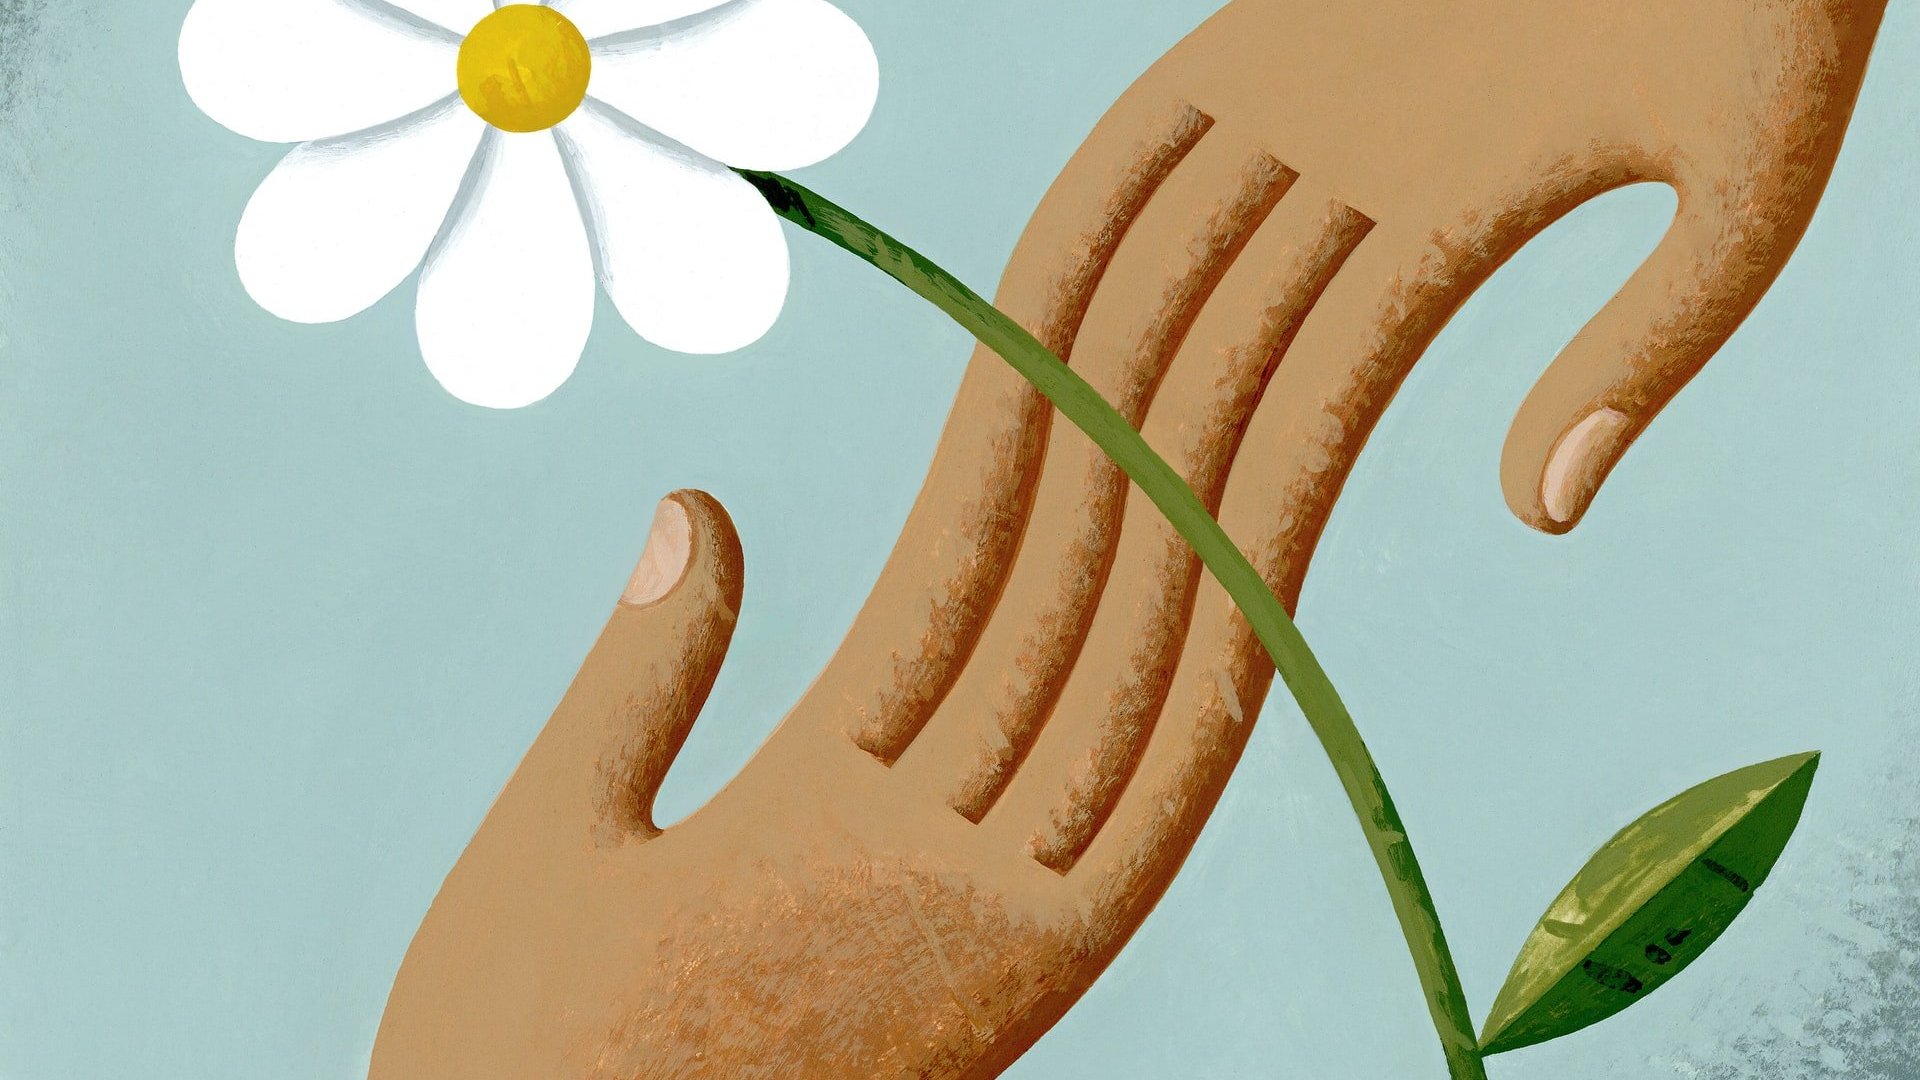 Ilustração de duas mãos negras de tom claro unificadas, com uma flor tipo margarida branca por cima.